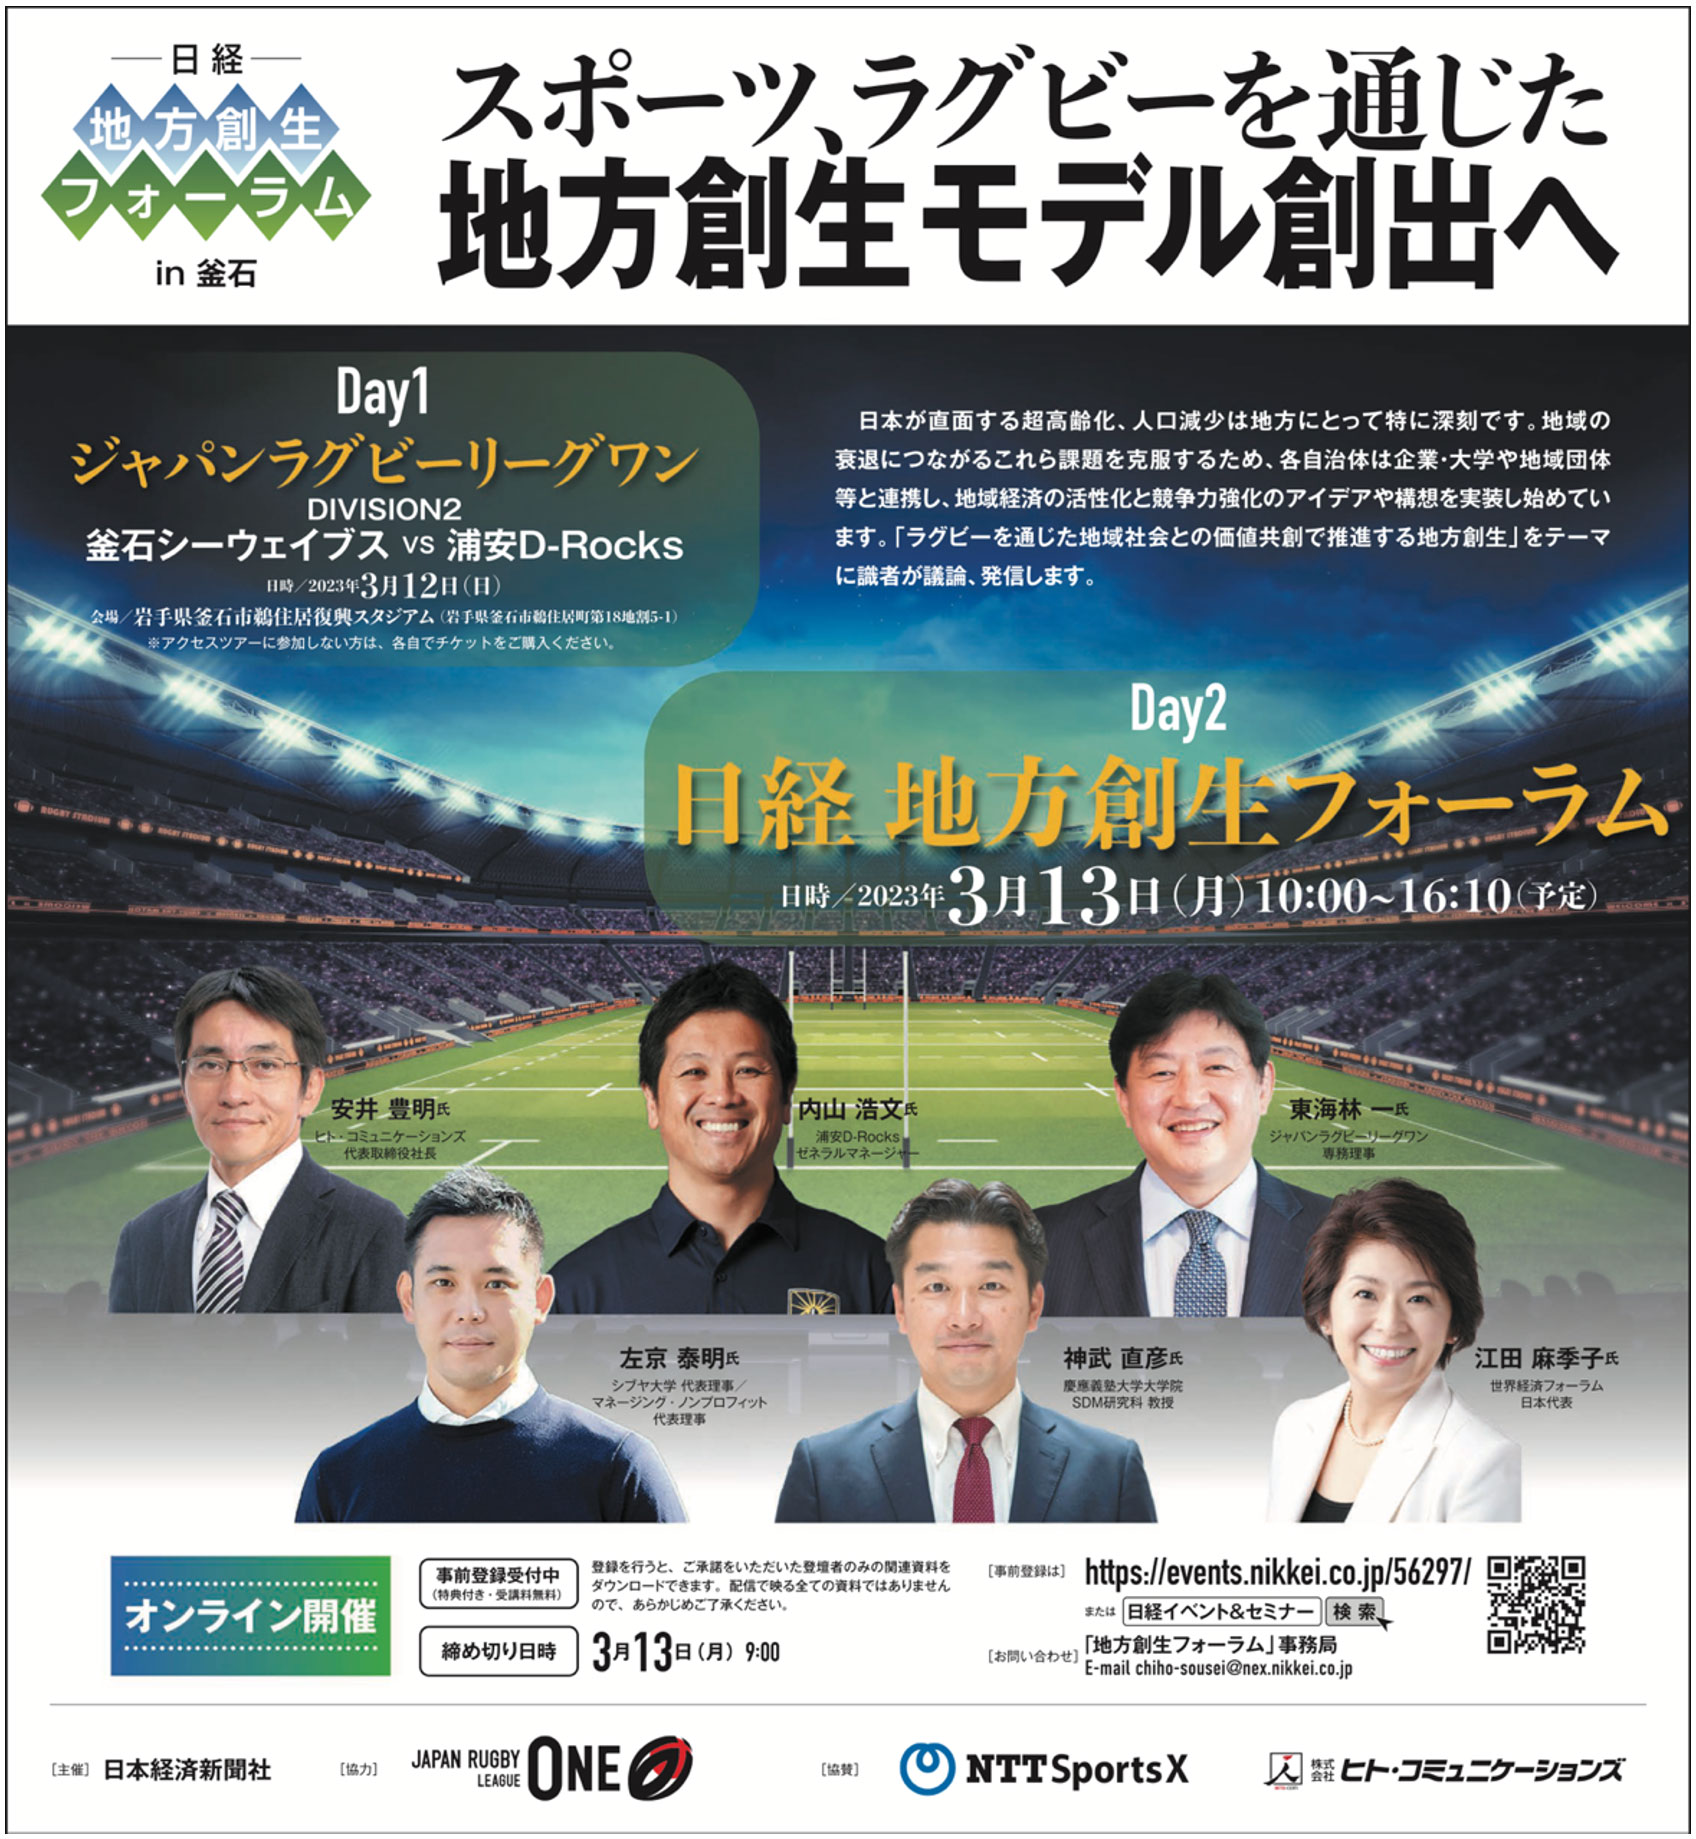 3/13（月） 日経地方創生フォーラムin 釜石　スポーツ、ラグビーを通じた地方創生モデル創出へ 概要